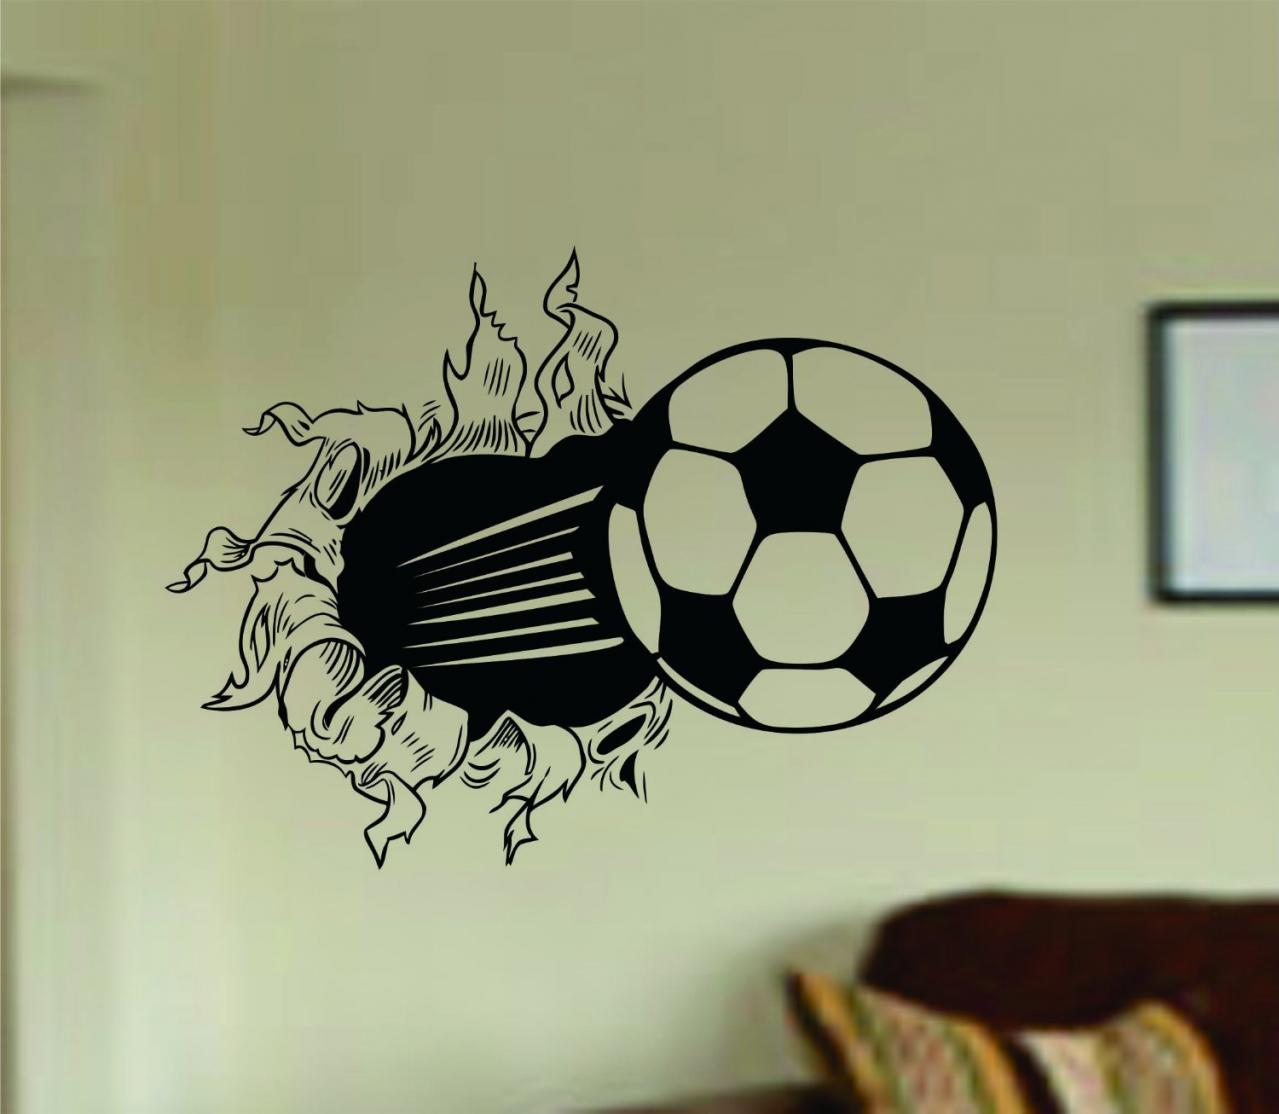 WORLD CUP Special Soccer Ball Bursting Through Wall Vinyl Wall Decal Sticker Art Sports Kid Children Ball Nursery Boy Teen